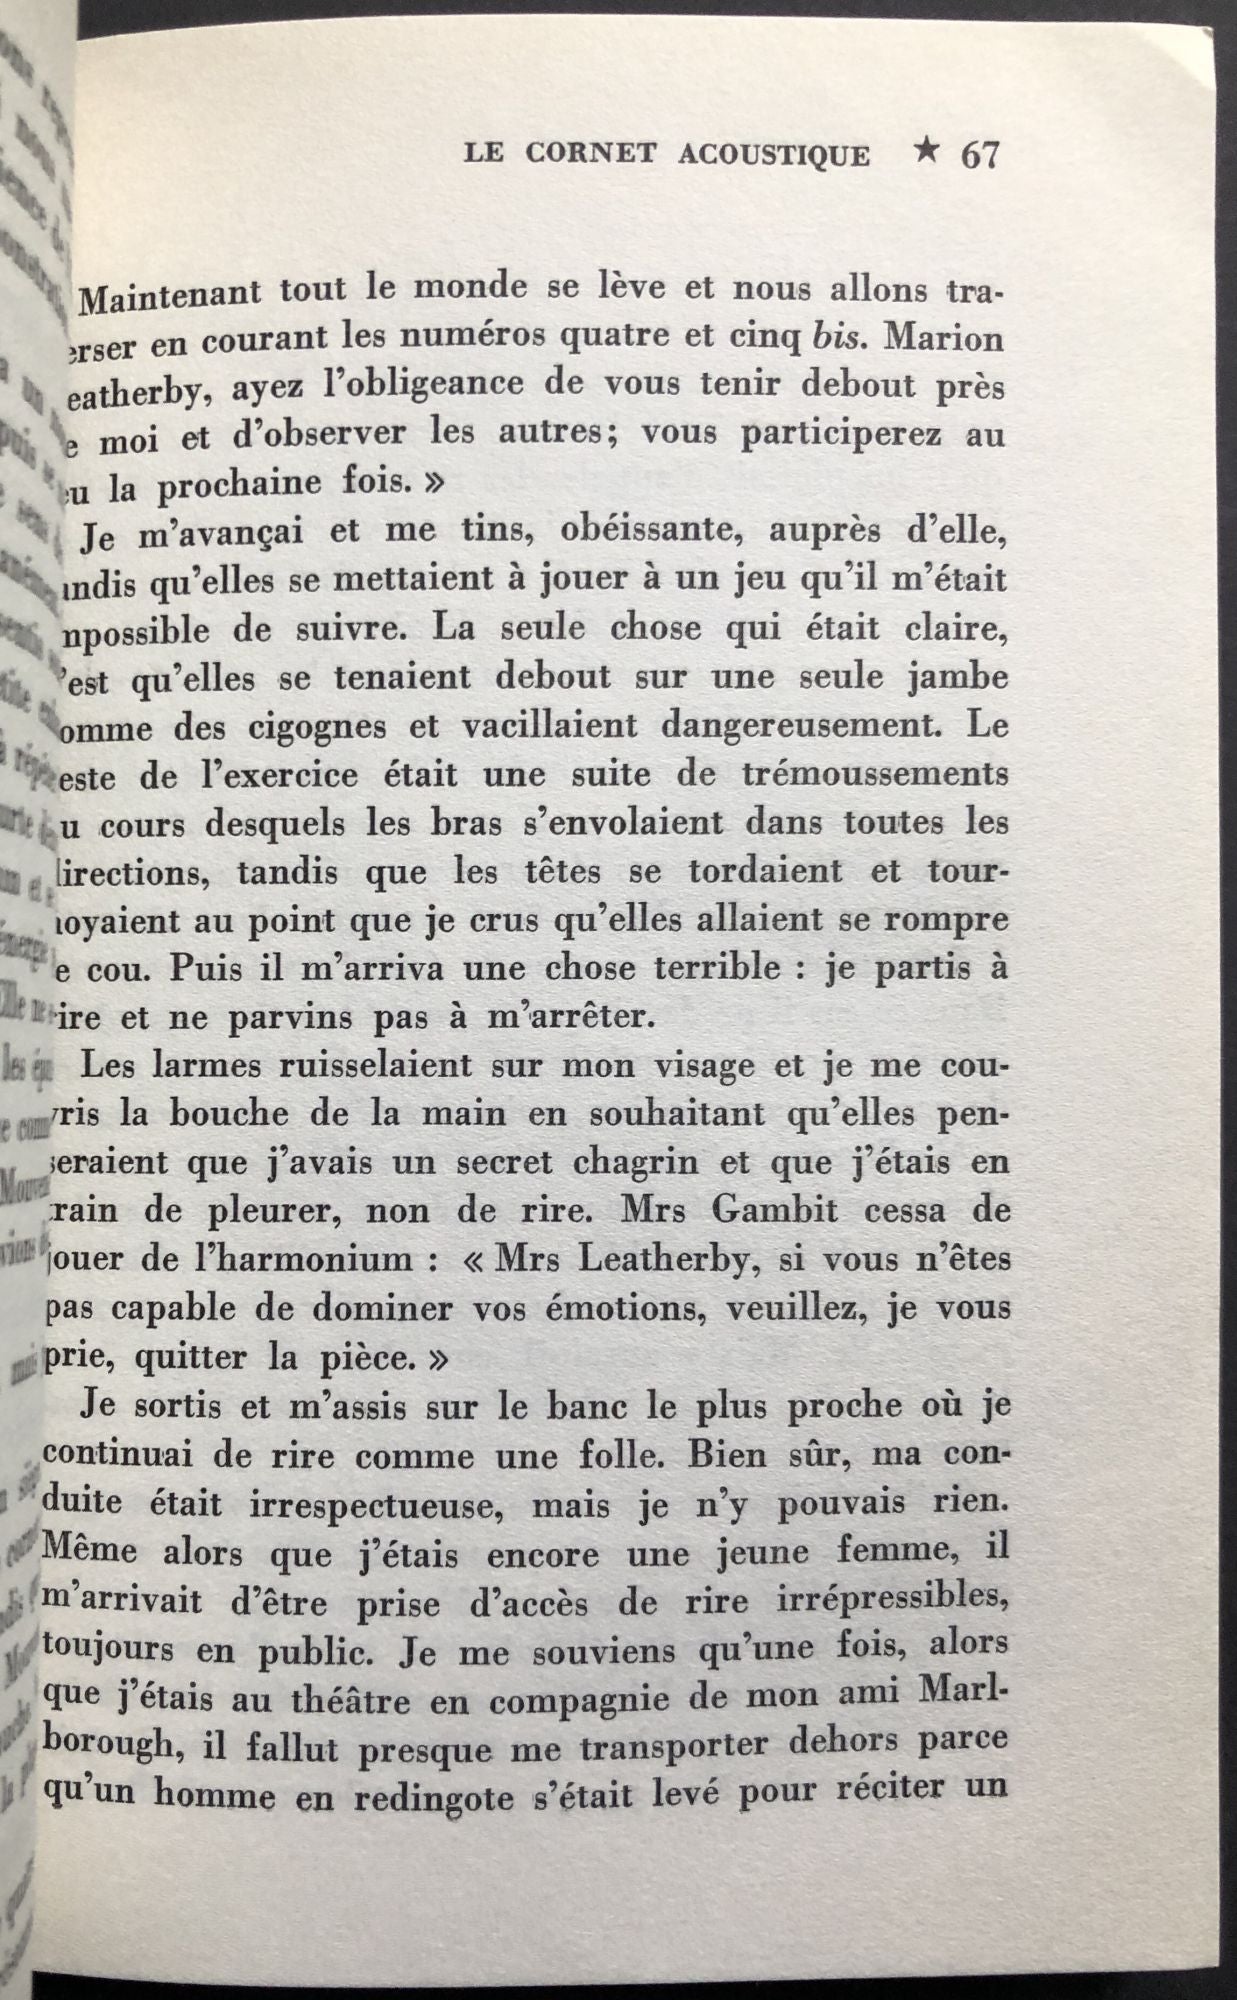 Le Cornet Acoustique, traduit de l'Anglais par Henri Parisot by Leonora  Carrington on Common Crow Books